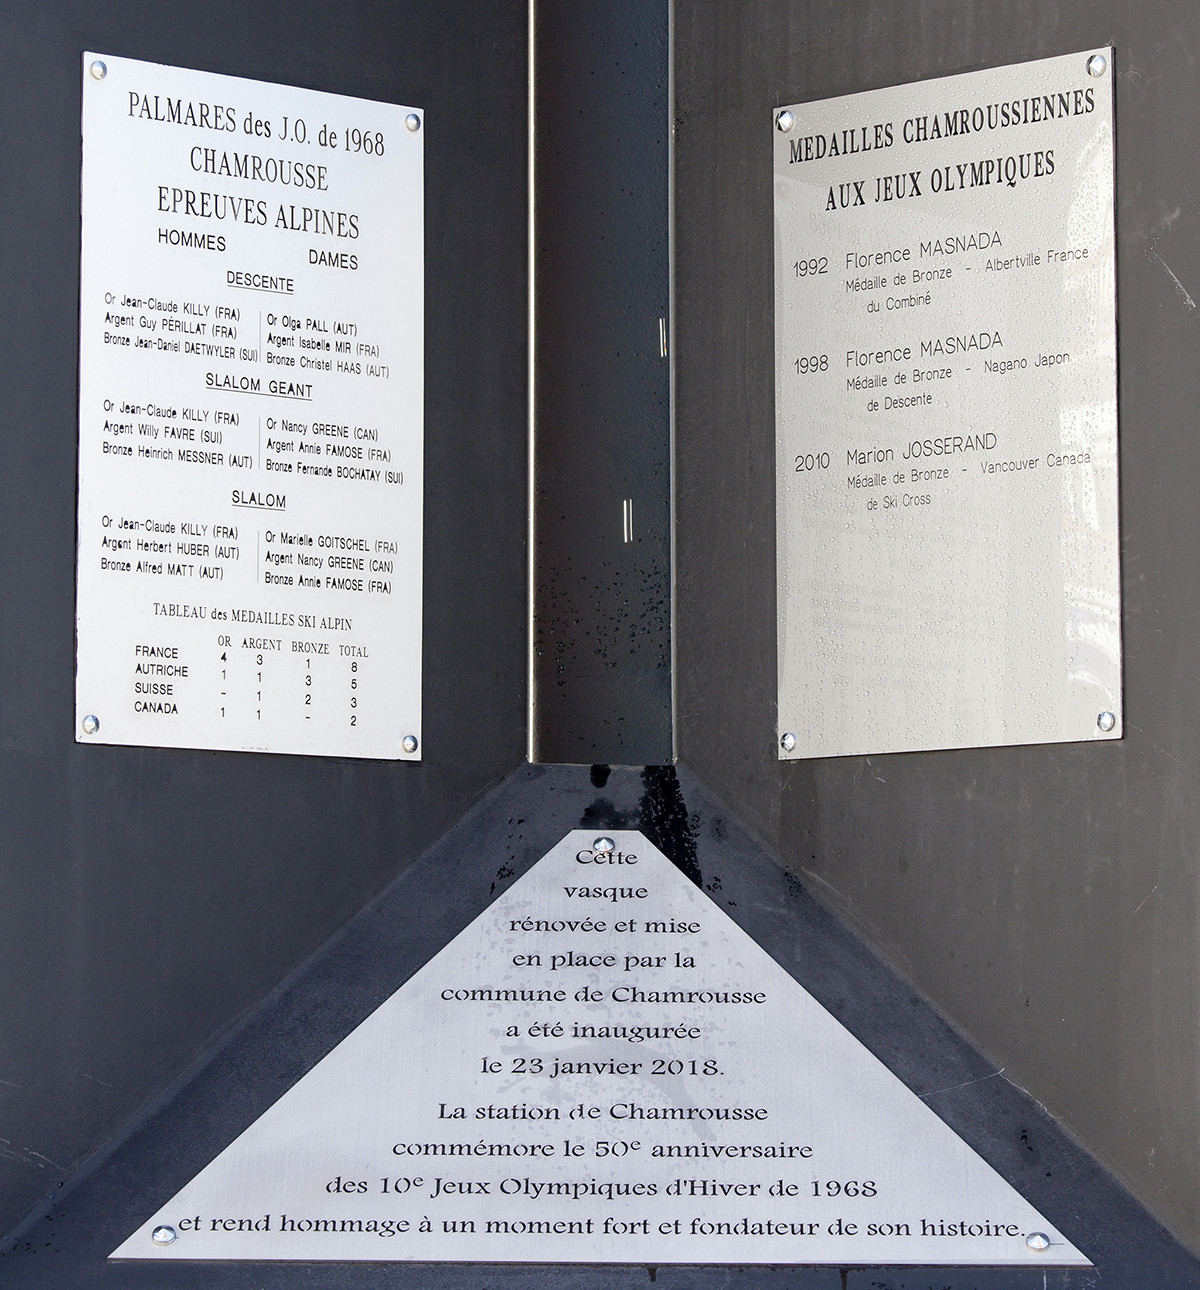 Chamrousse Olympic cauldron commemorative plaque